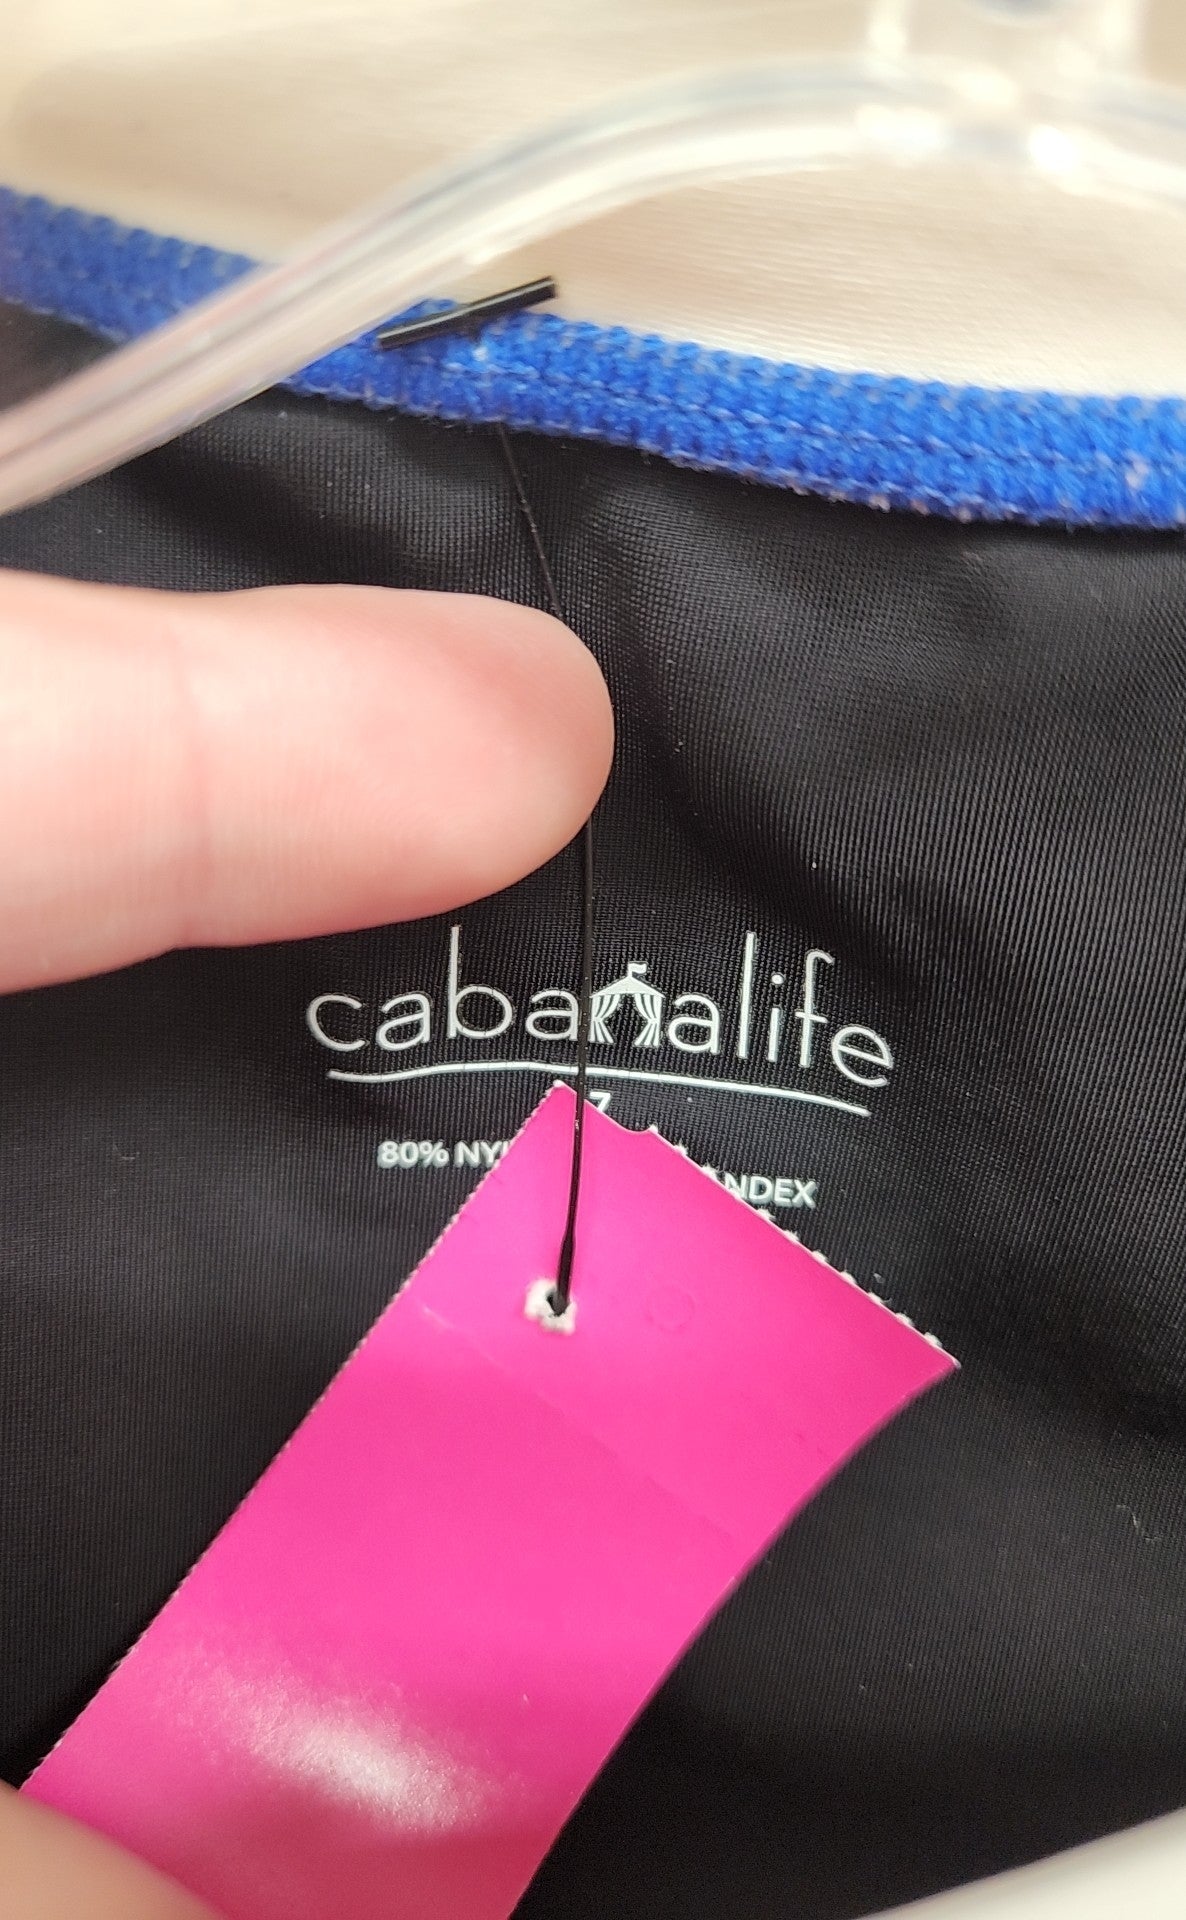 Cabanalife Boy's Size 7 Black Shirt